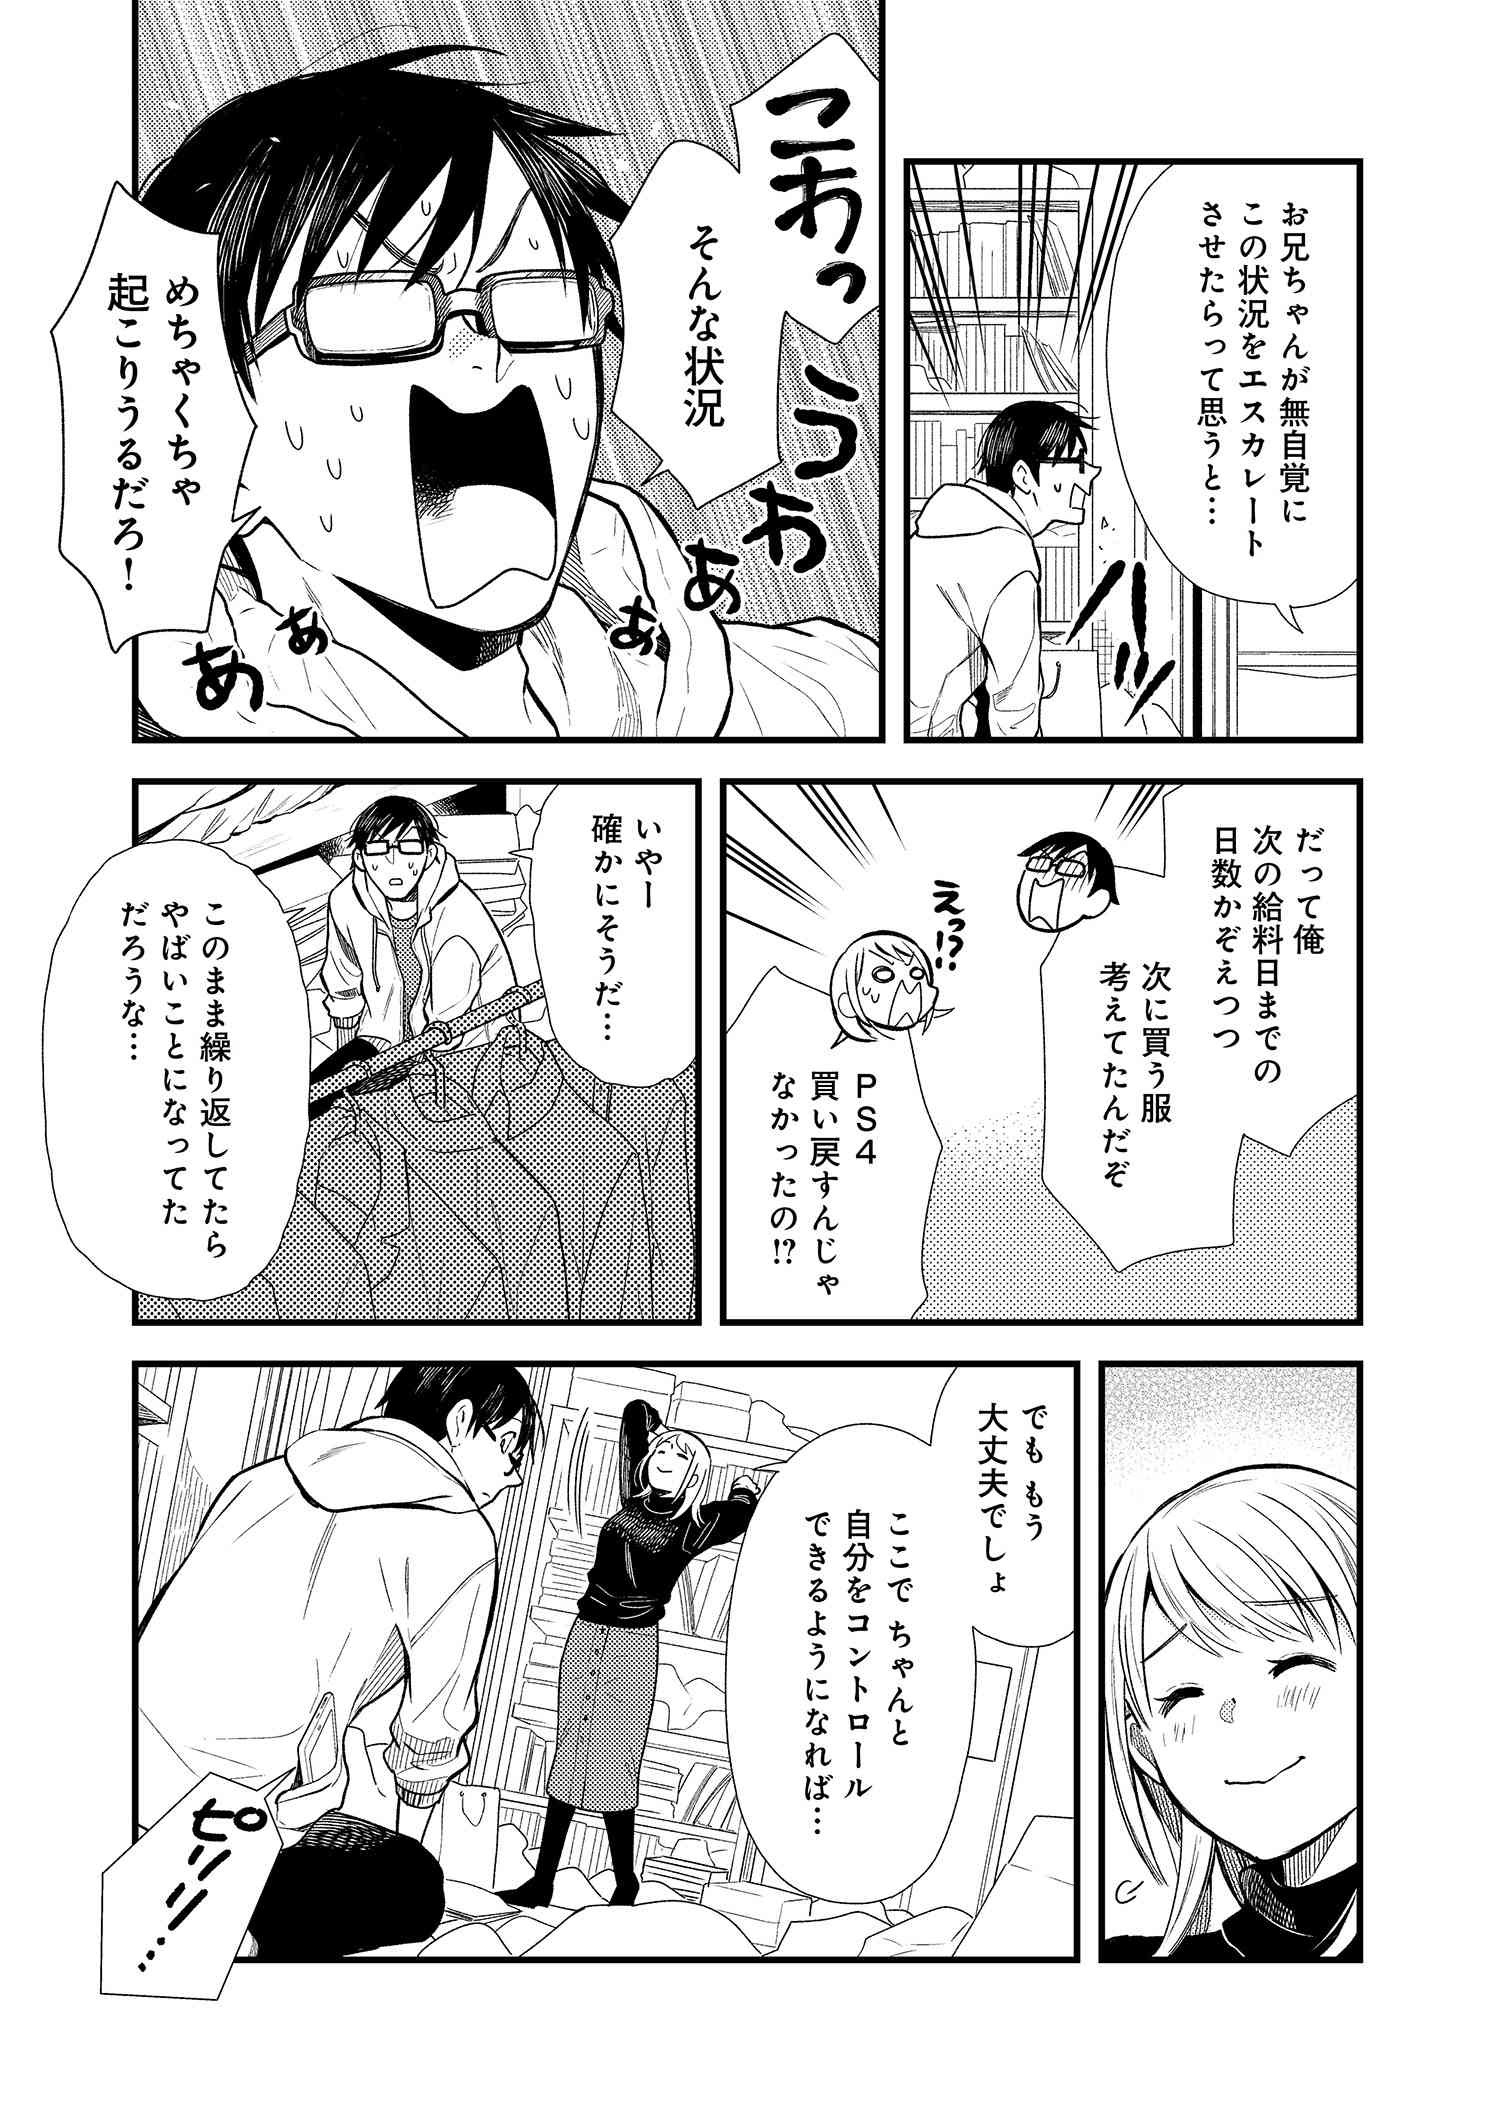 Fuku o Kiru Nara Konna Fuu ni - 服を着るならこんなふうに - Chapter 15 - Page 15